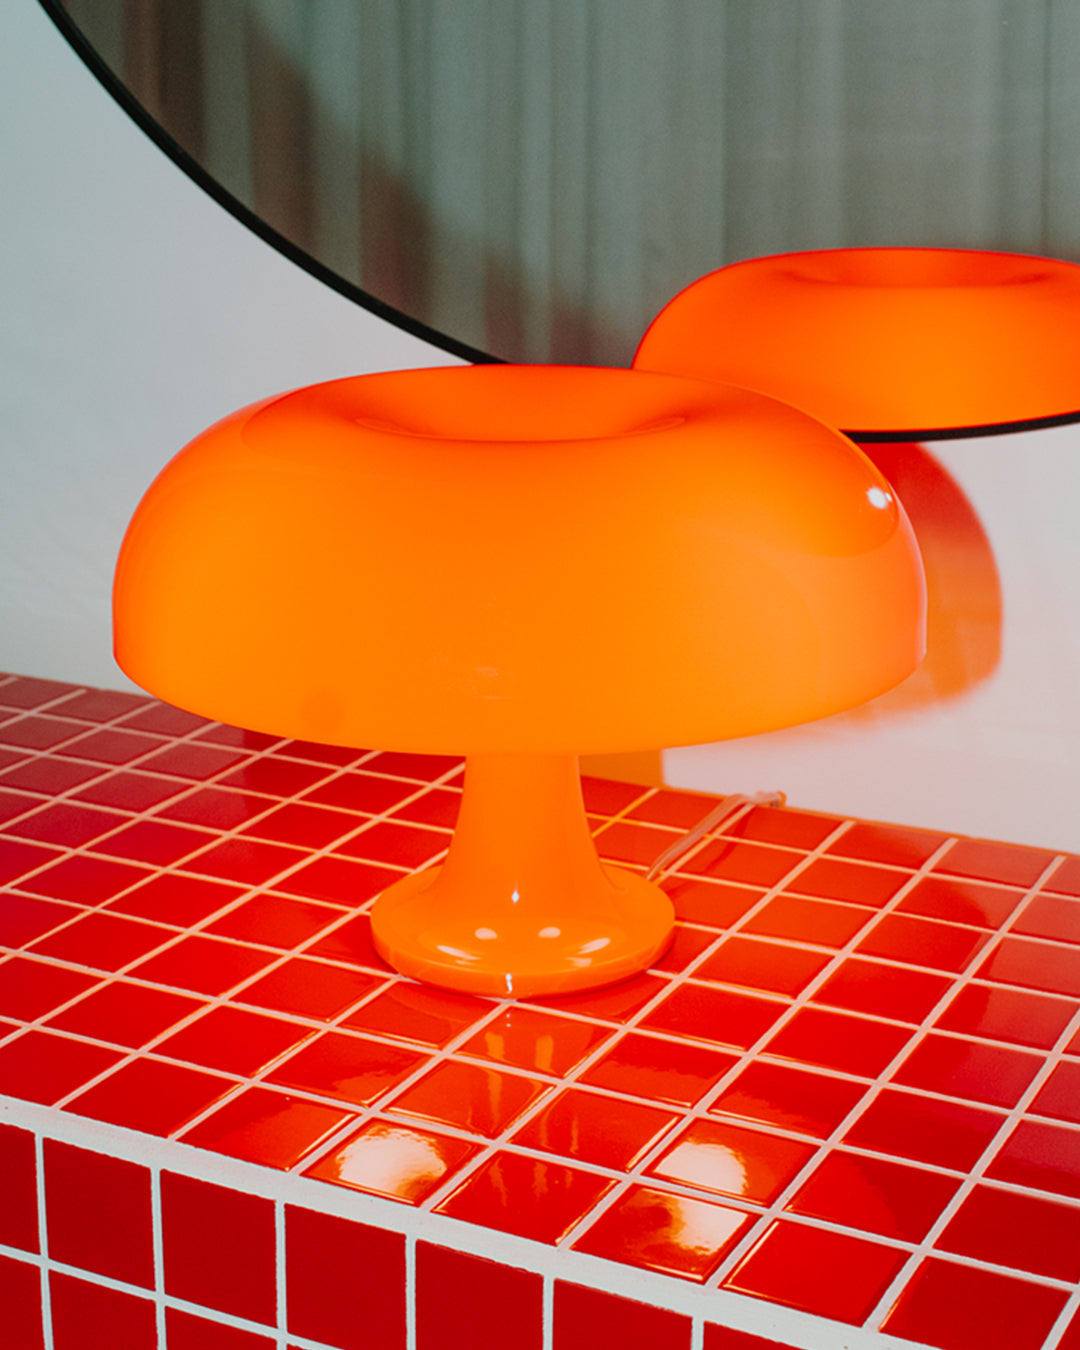 'The Nesso' Replica Lamp